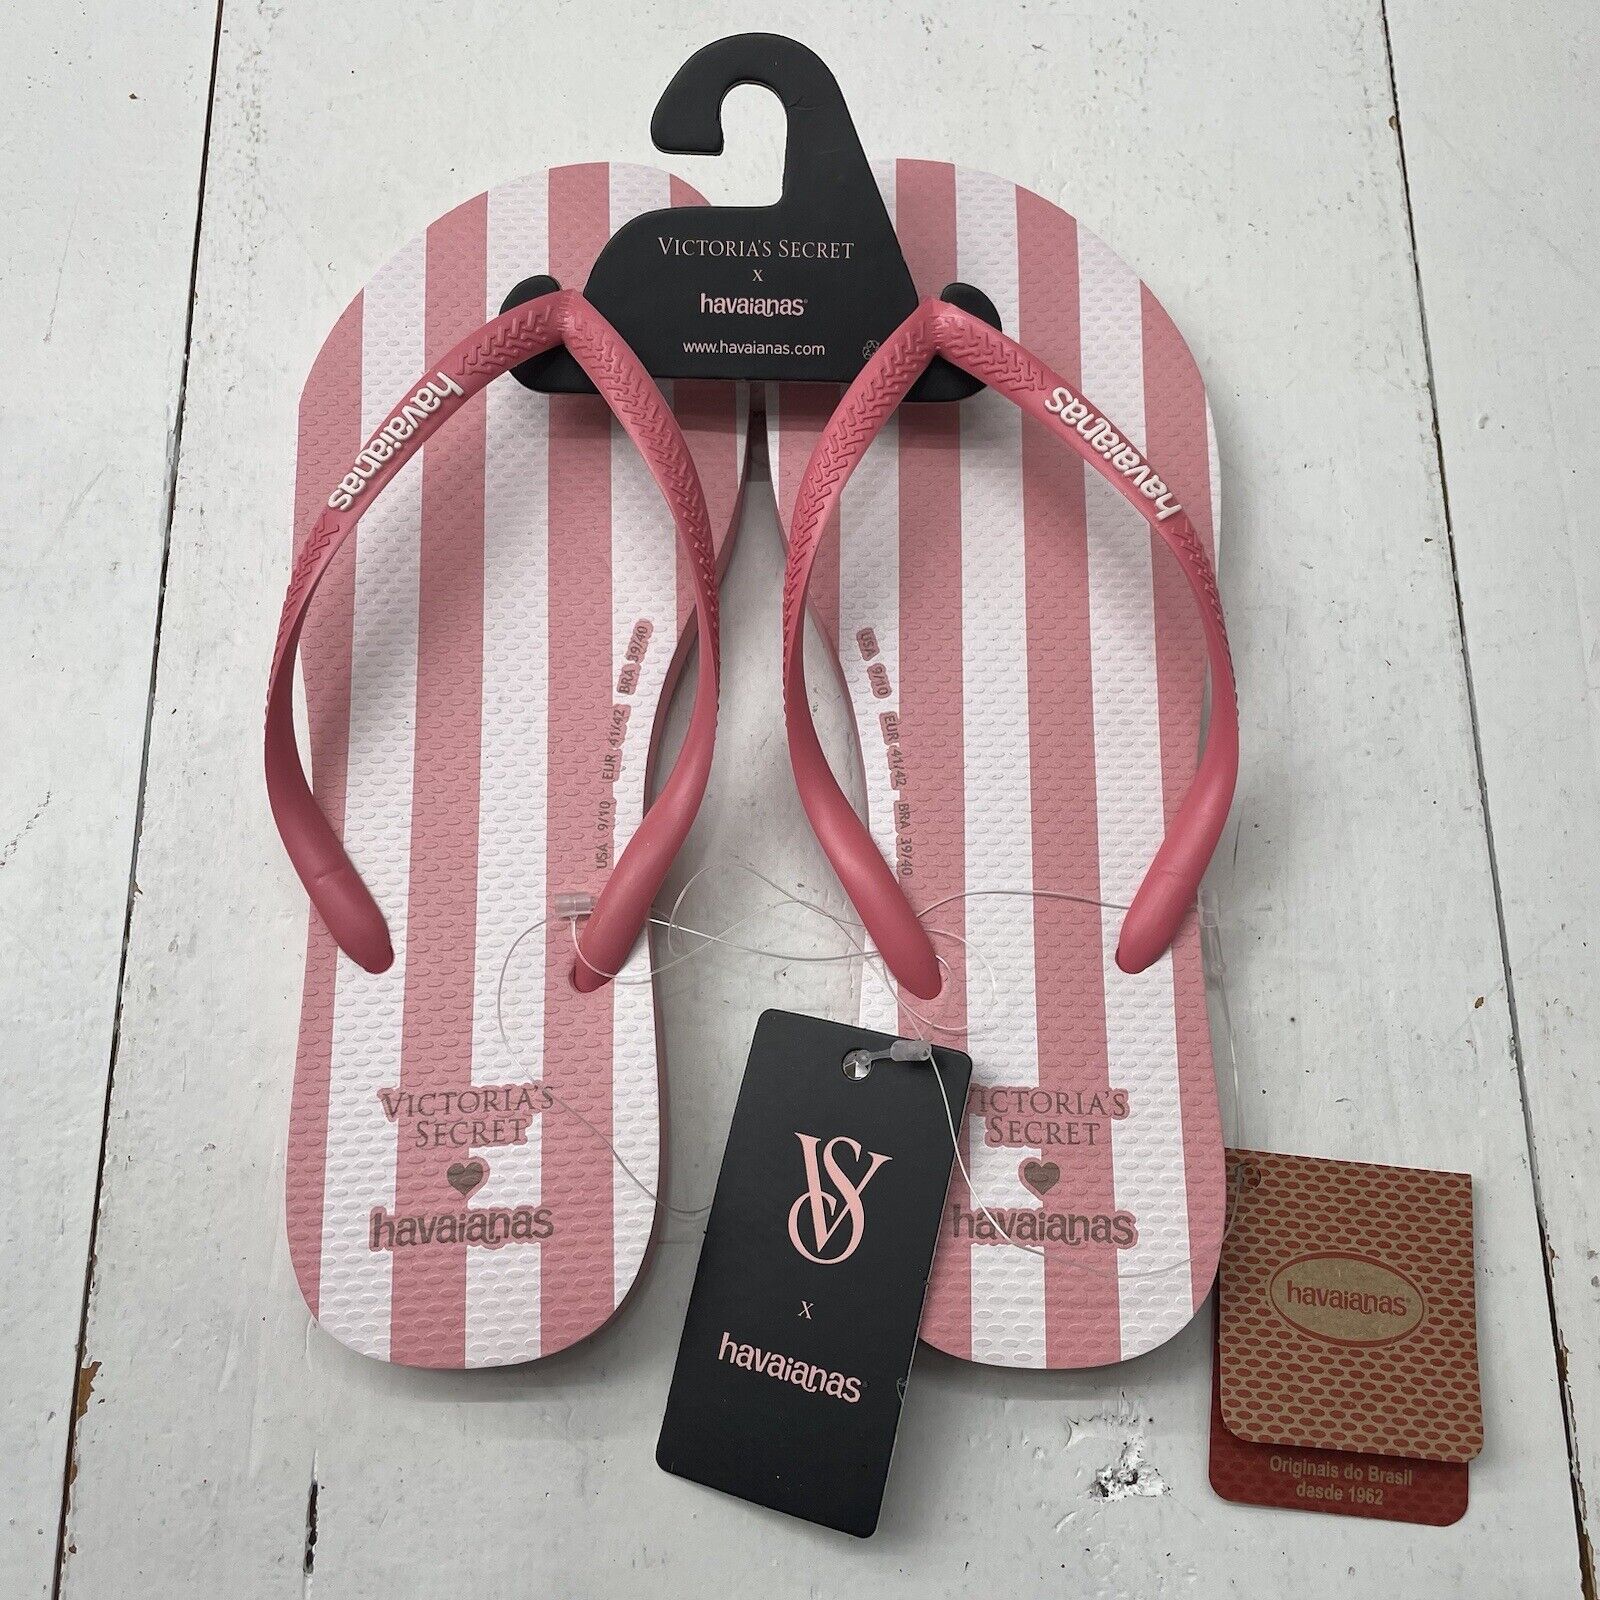 Havaianas x Victoria's Secret Pink White Stripe Slim Flip Flops